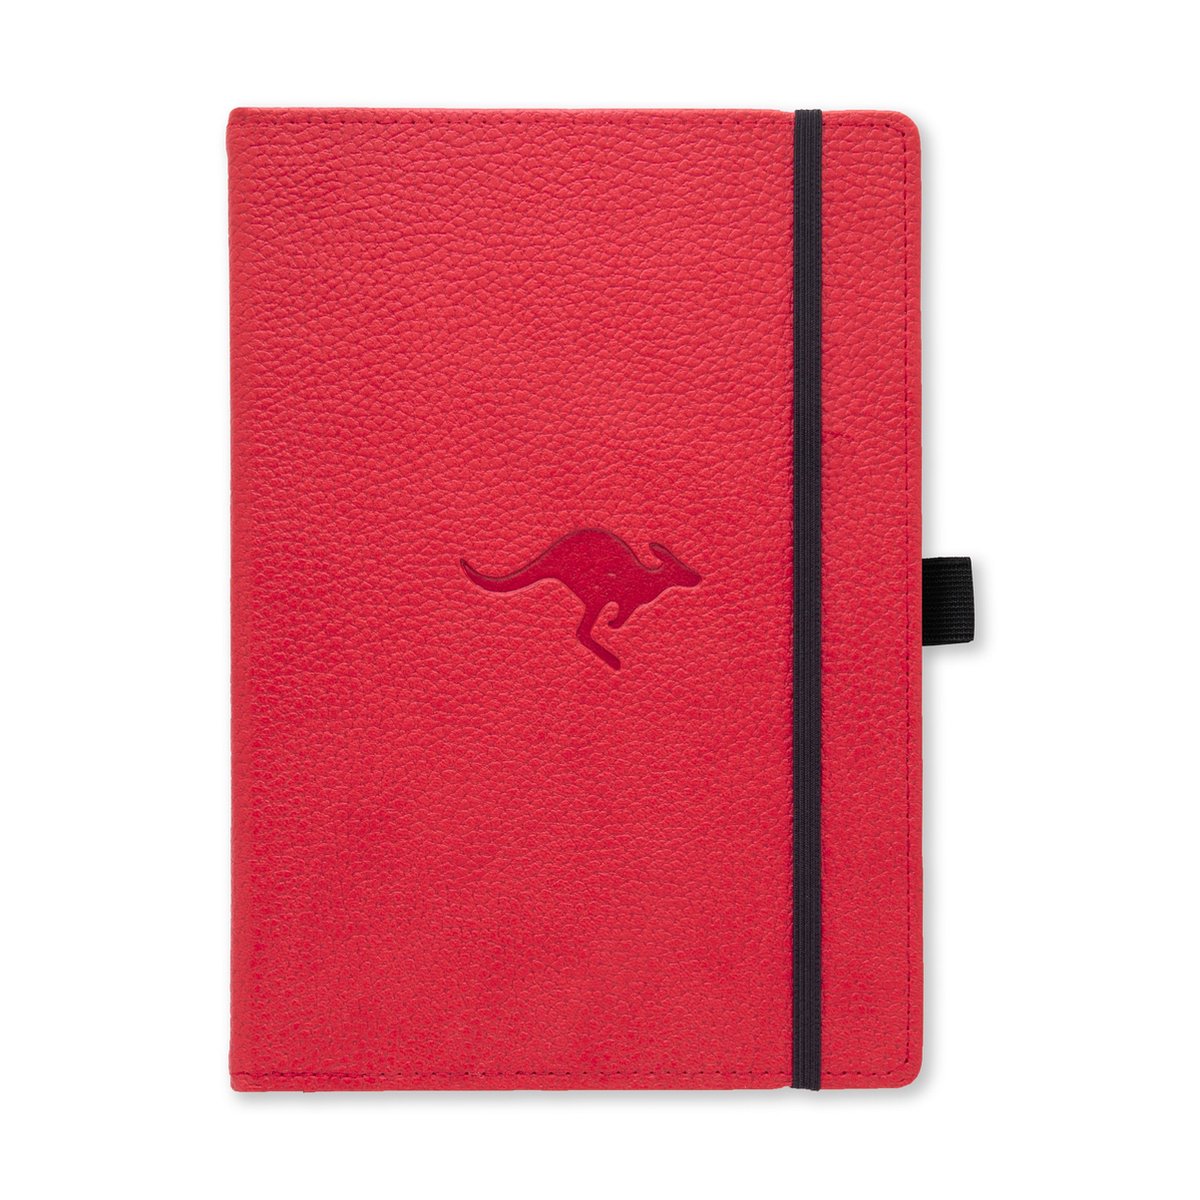 Dingbats* Wildlife A5 Notitieboek – Red Kangaroo Stippen – Bullet Journal met 100 gsm Inktvrij Papier – Schetsboek met Harde Kaft, Binnenvak, Elastische Sluiting en Bladwijzer